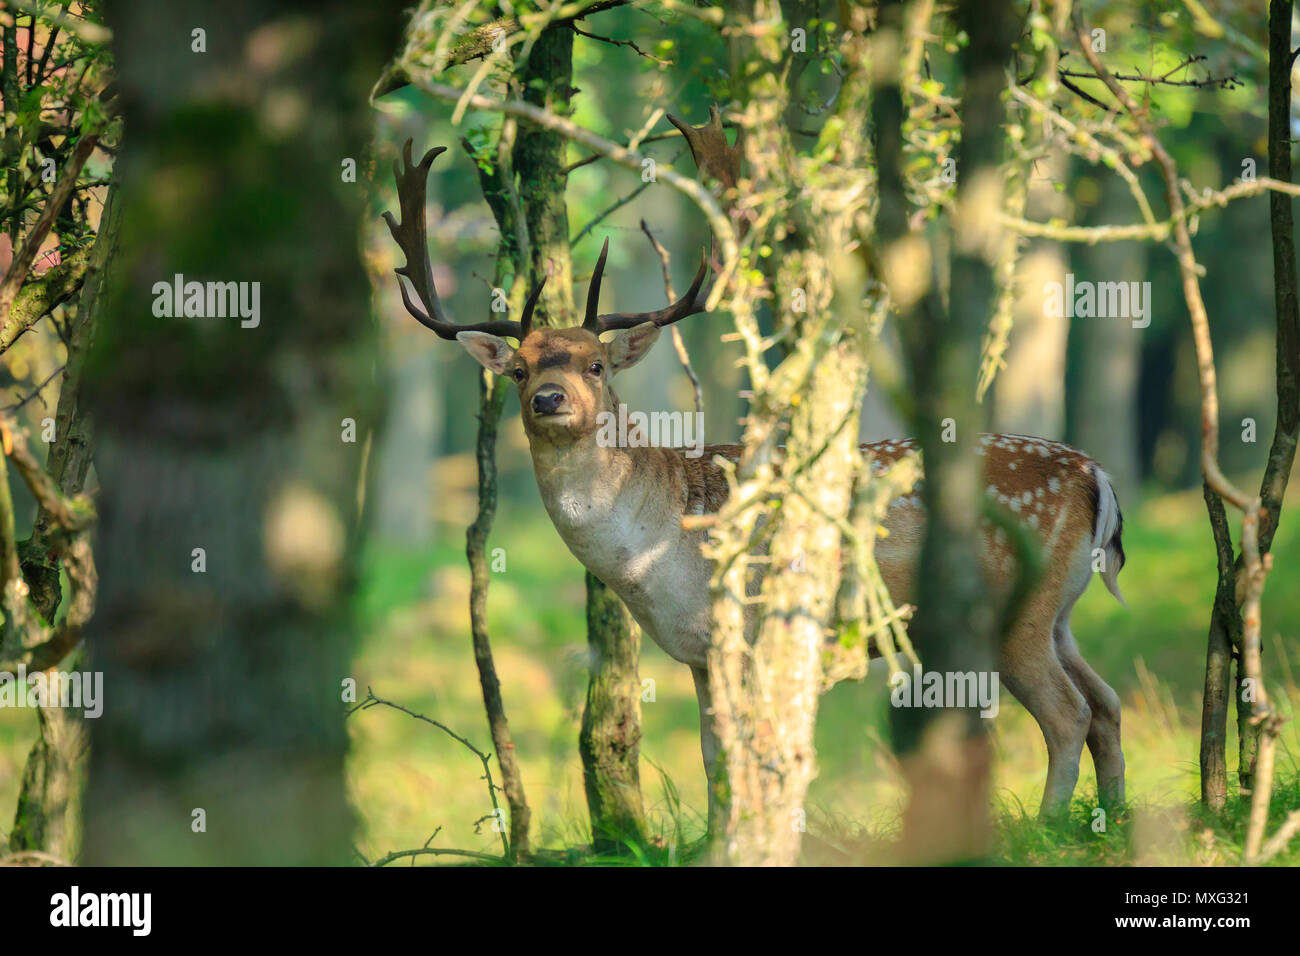 Close up portrait of a male fallow deer stag, Dama Dama, montrant le comportement d'ornières cachées dans une profonde forêt vert foncé pendant la saison d'automne. Banque D'Images